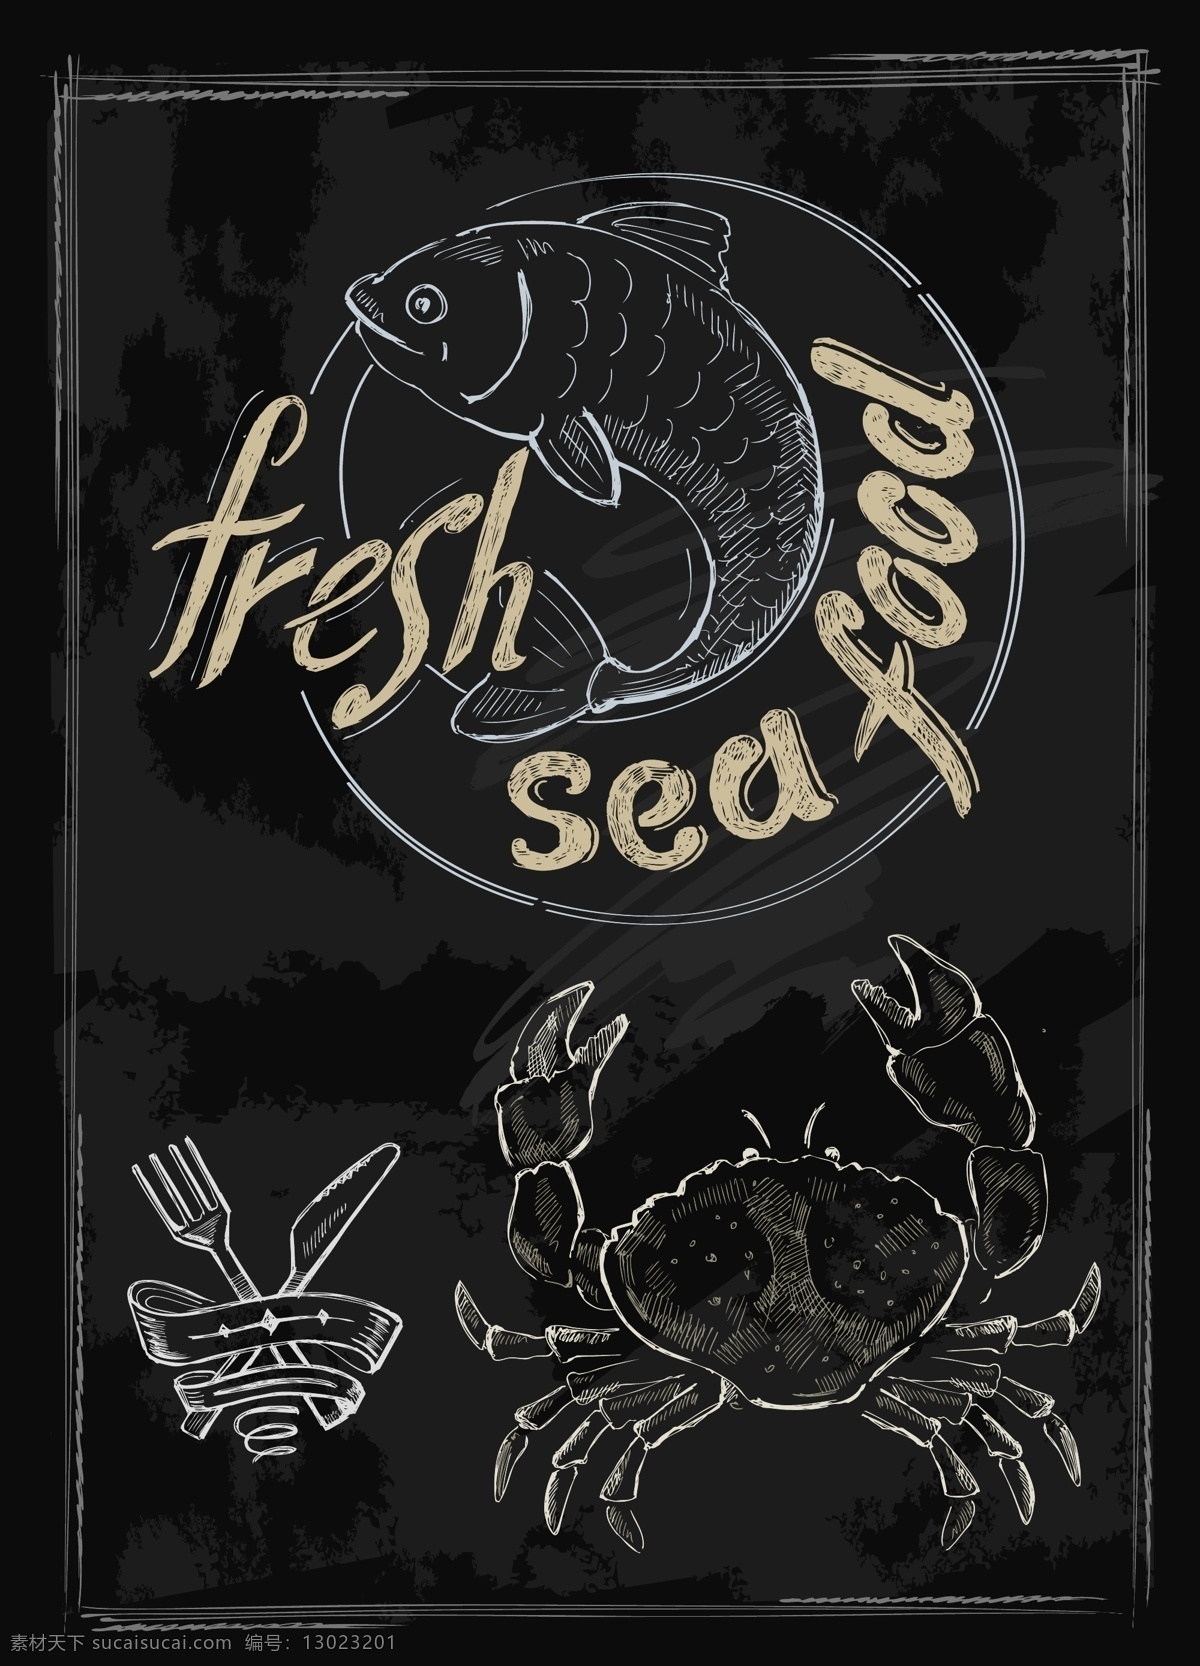 西餐厅 黑板 背景 粉笔 字画 菜单 矢量 螃蟹 鲤鱼 简约 卡通 设计素材 刀叉 平面素材